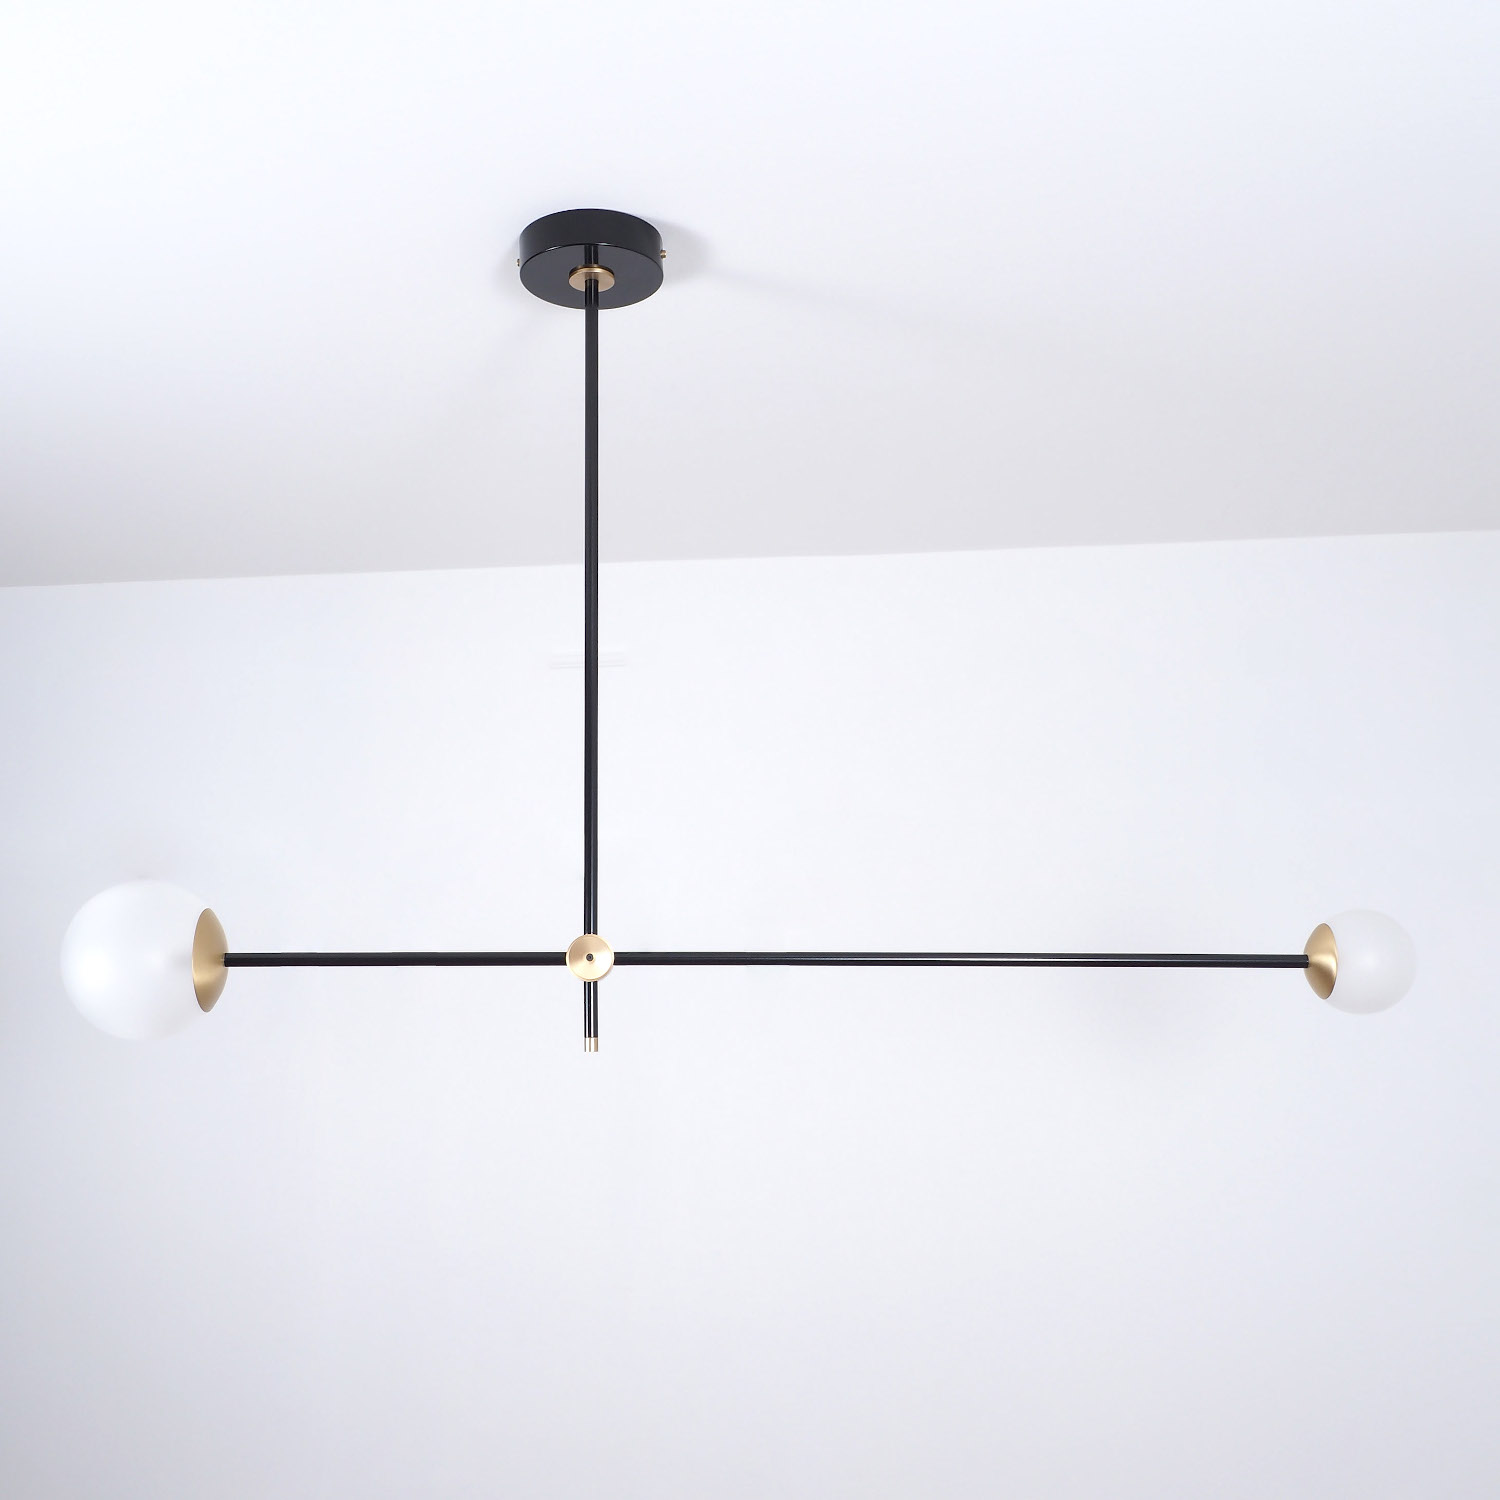 Asymmetrisch balancierter Design-Leuchter mit zwei Glaskugeln: Ausführung Messing satiniert & schwarz